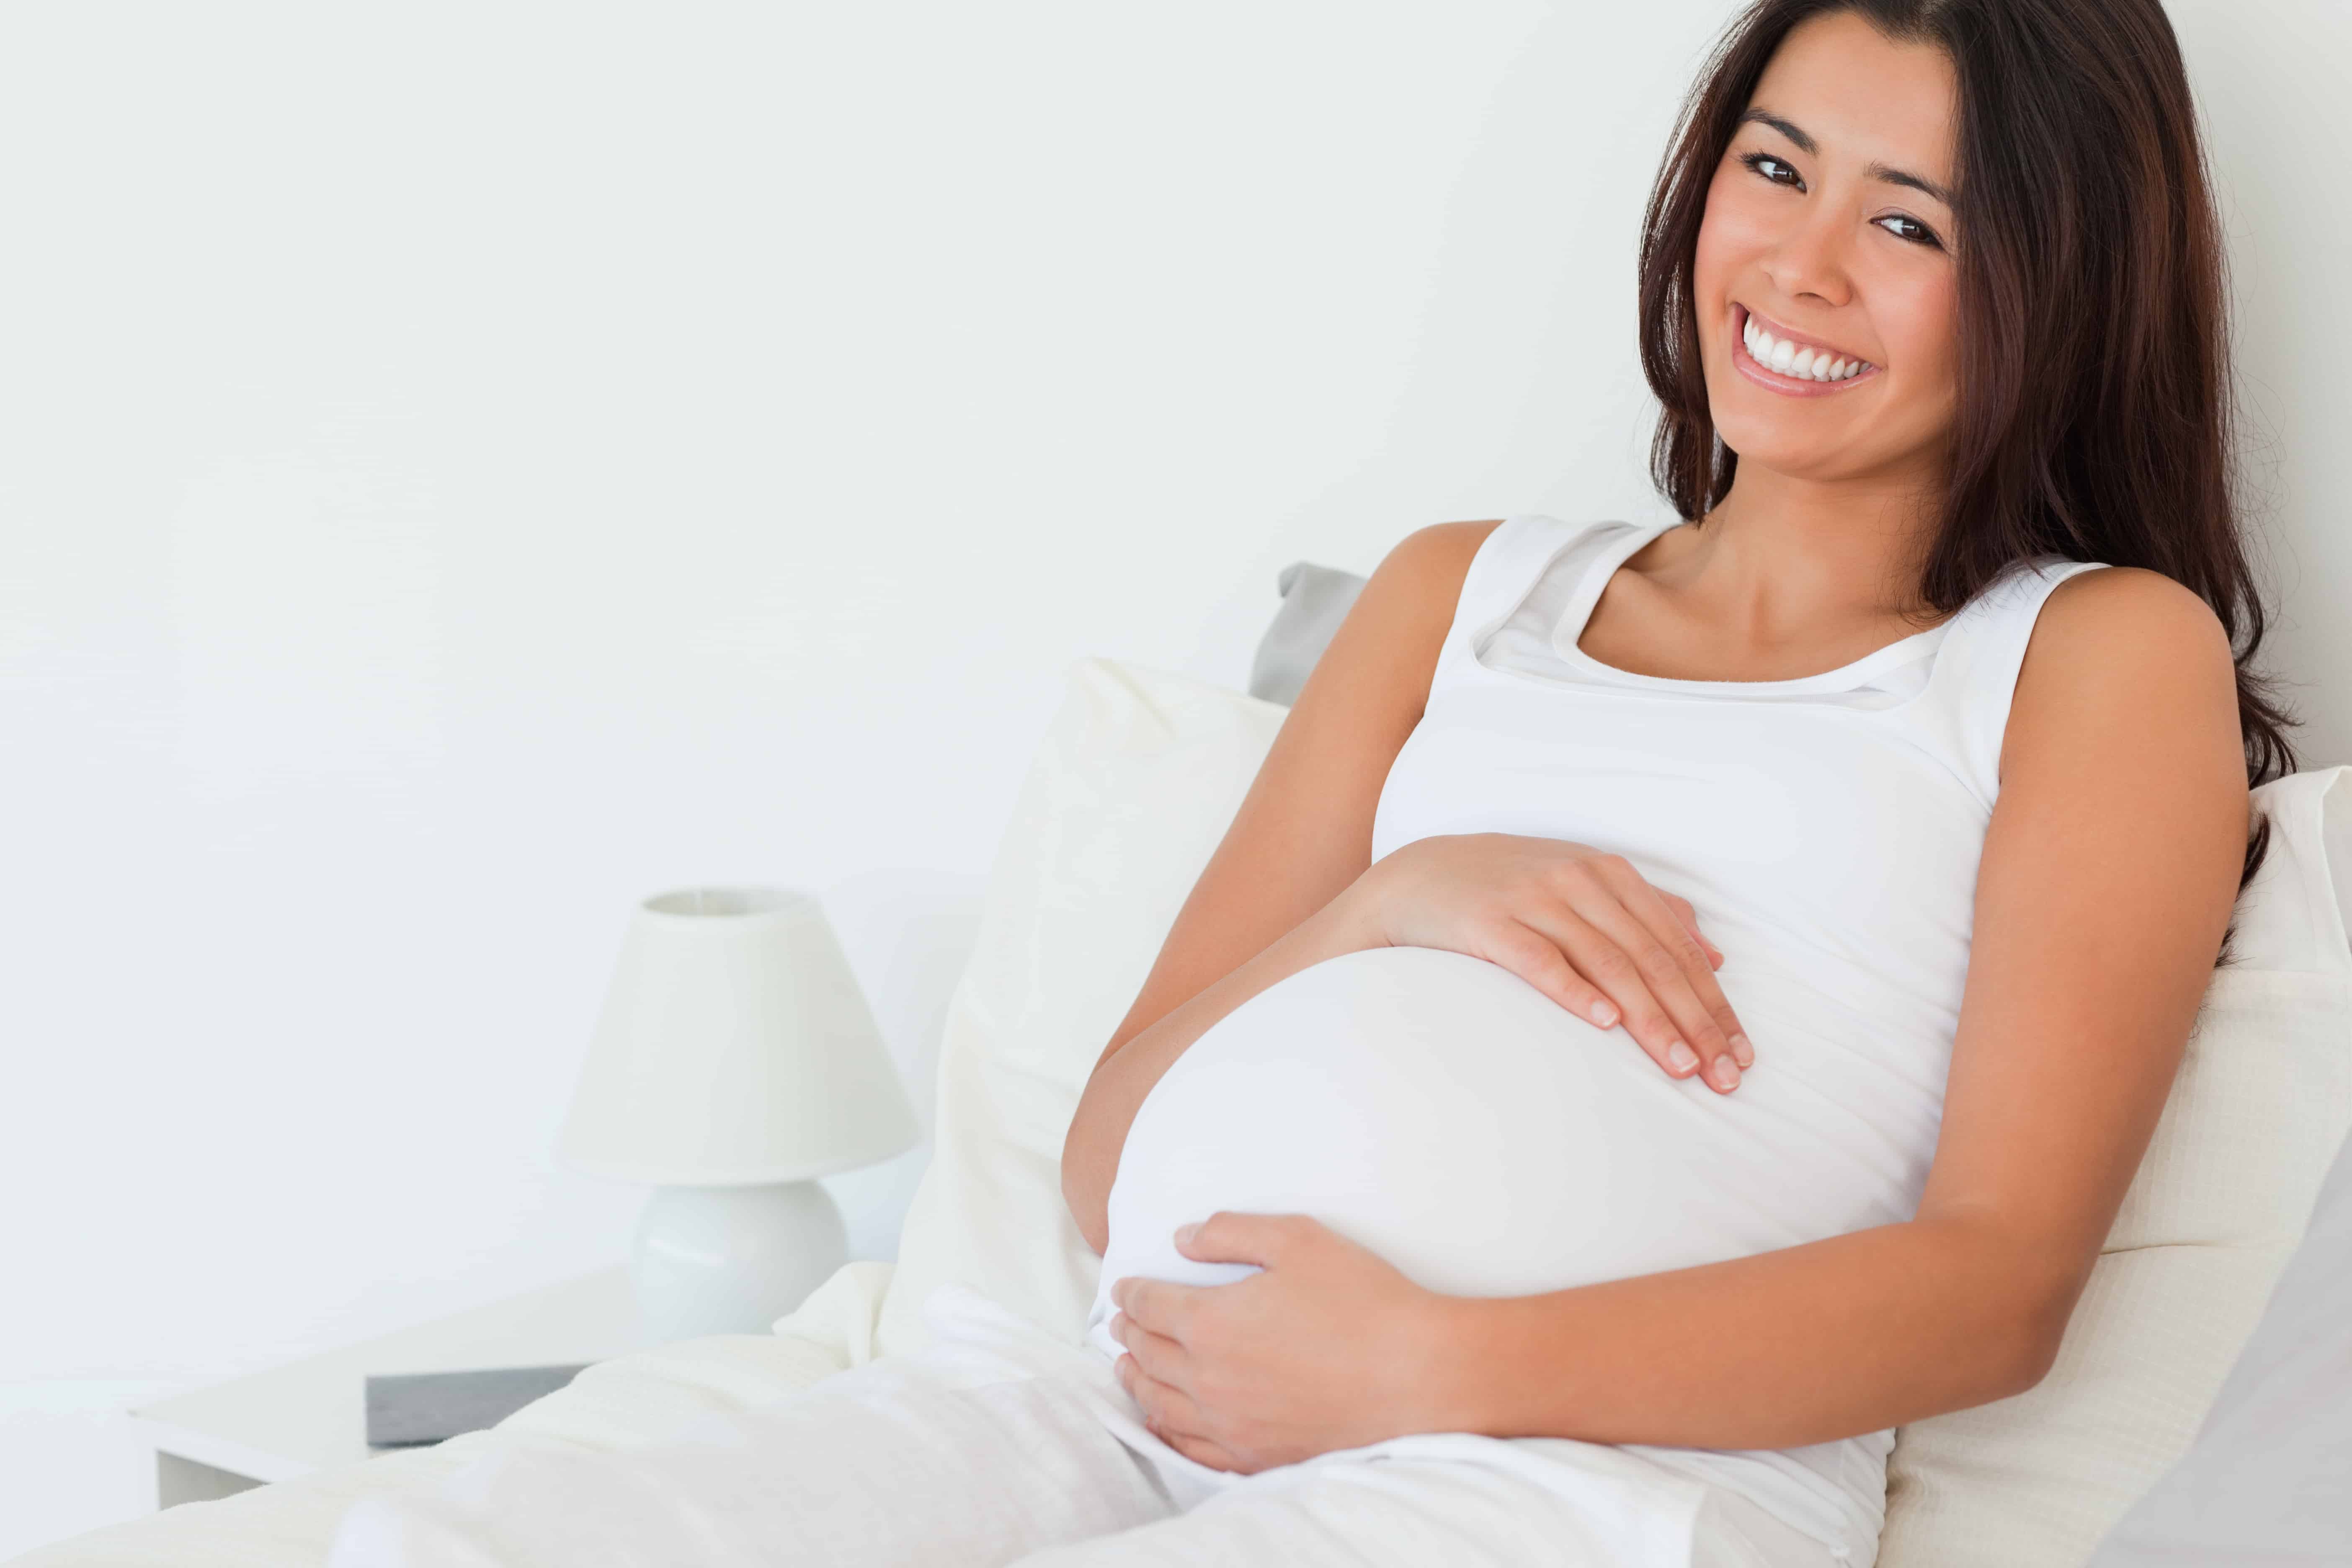 К чему снится родить ребенка беременной